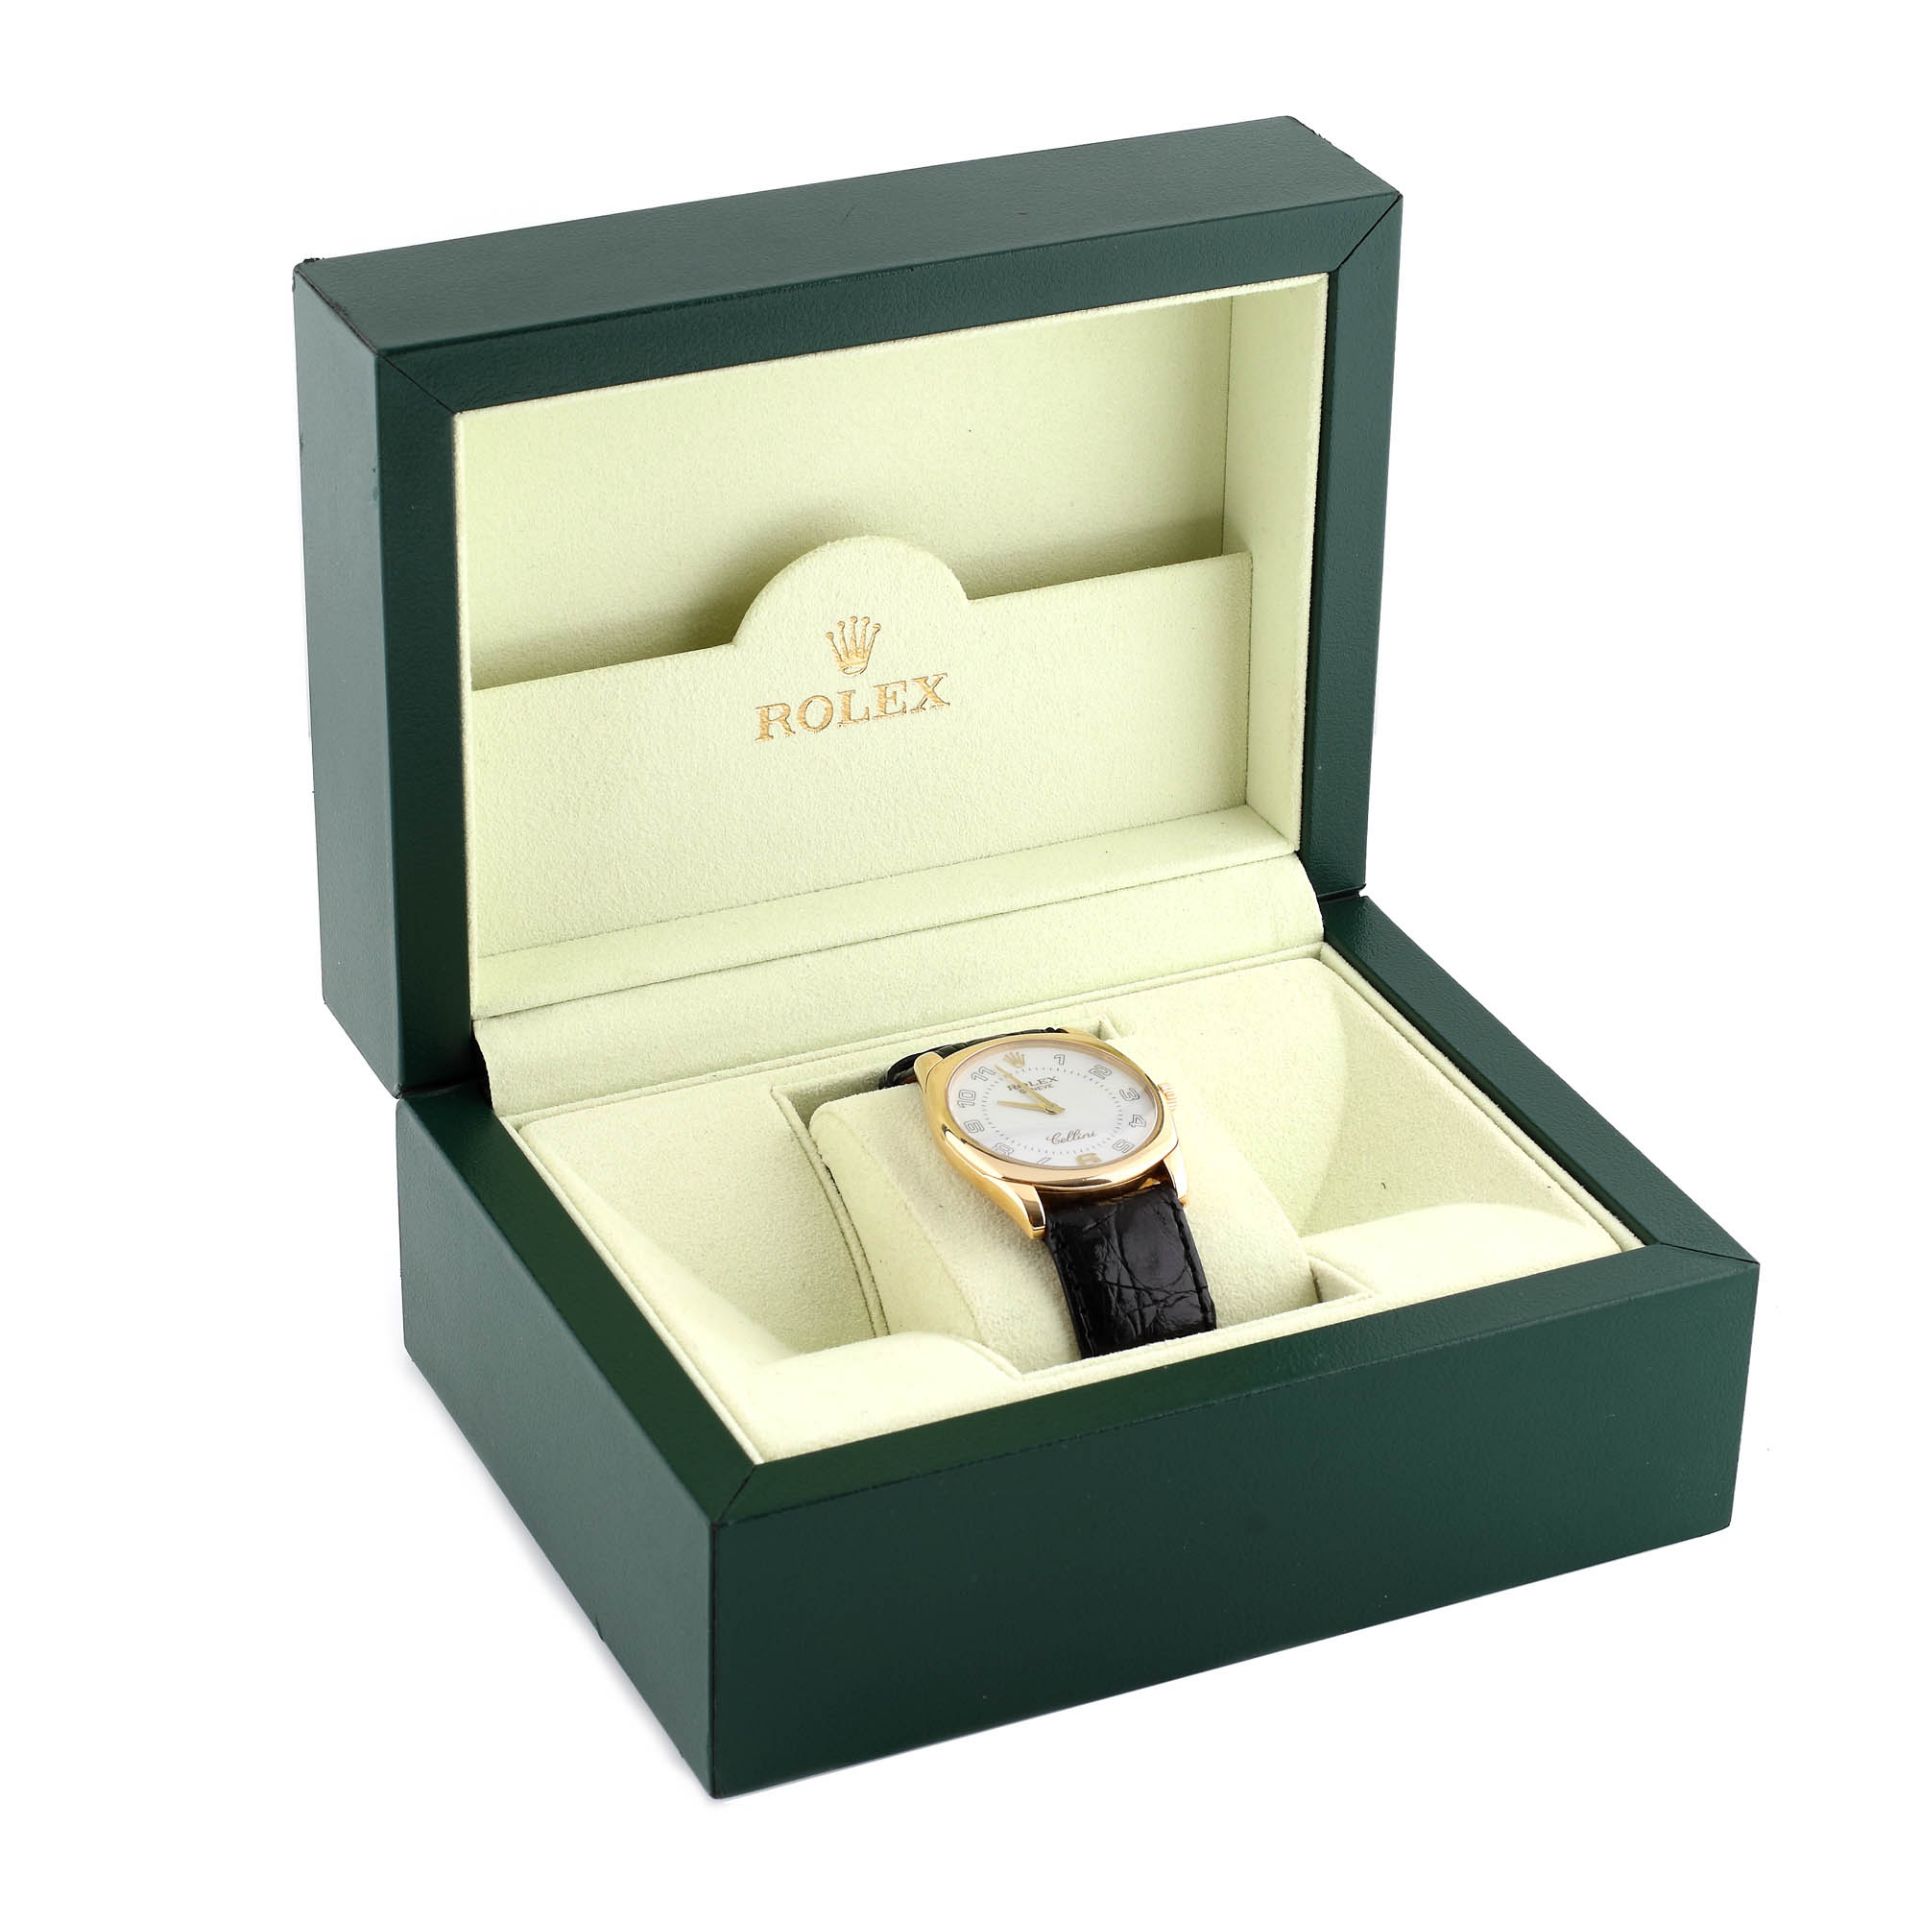 Rolex Cellini Danaous wristwatch, gold, unisex, original boxRolex Cellini Danaous wristwatch, g - Image 2 of 4